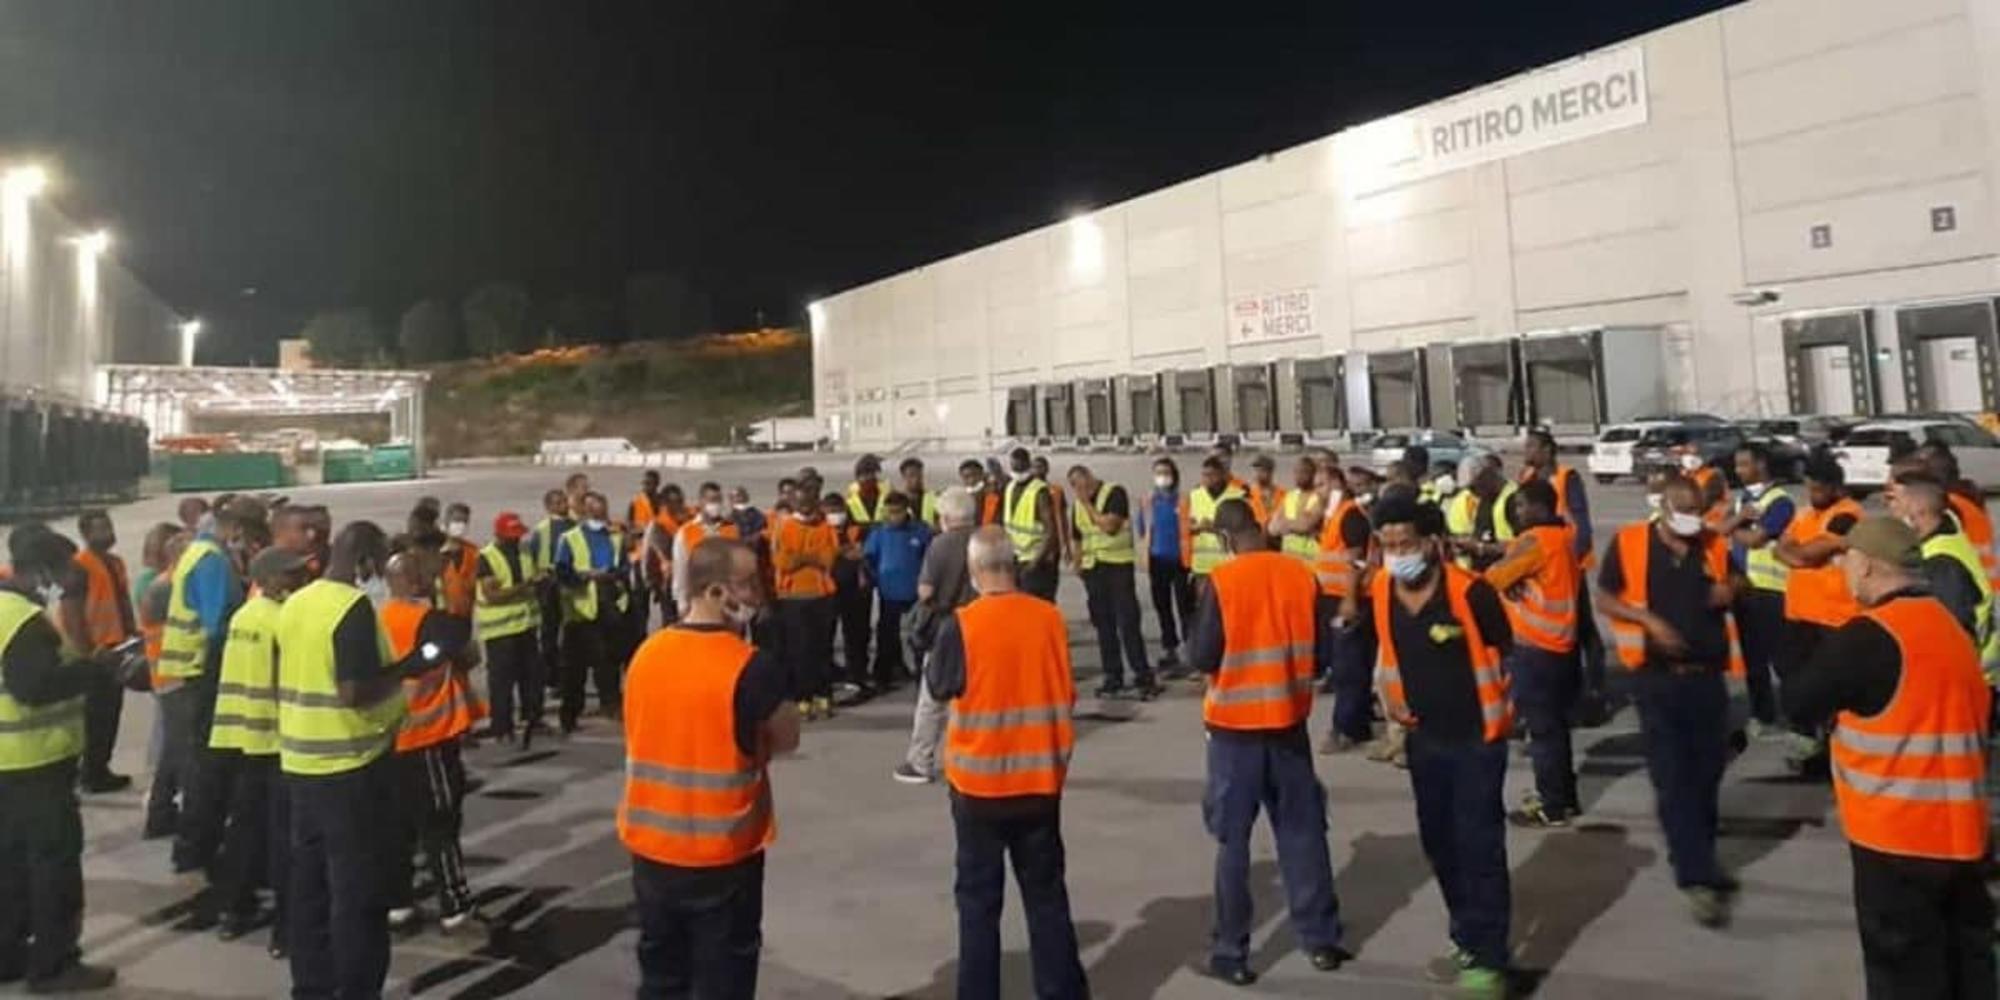 Reunión de trabajadores en huelga en un hub logístico a las afueras de Milán